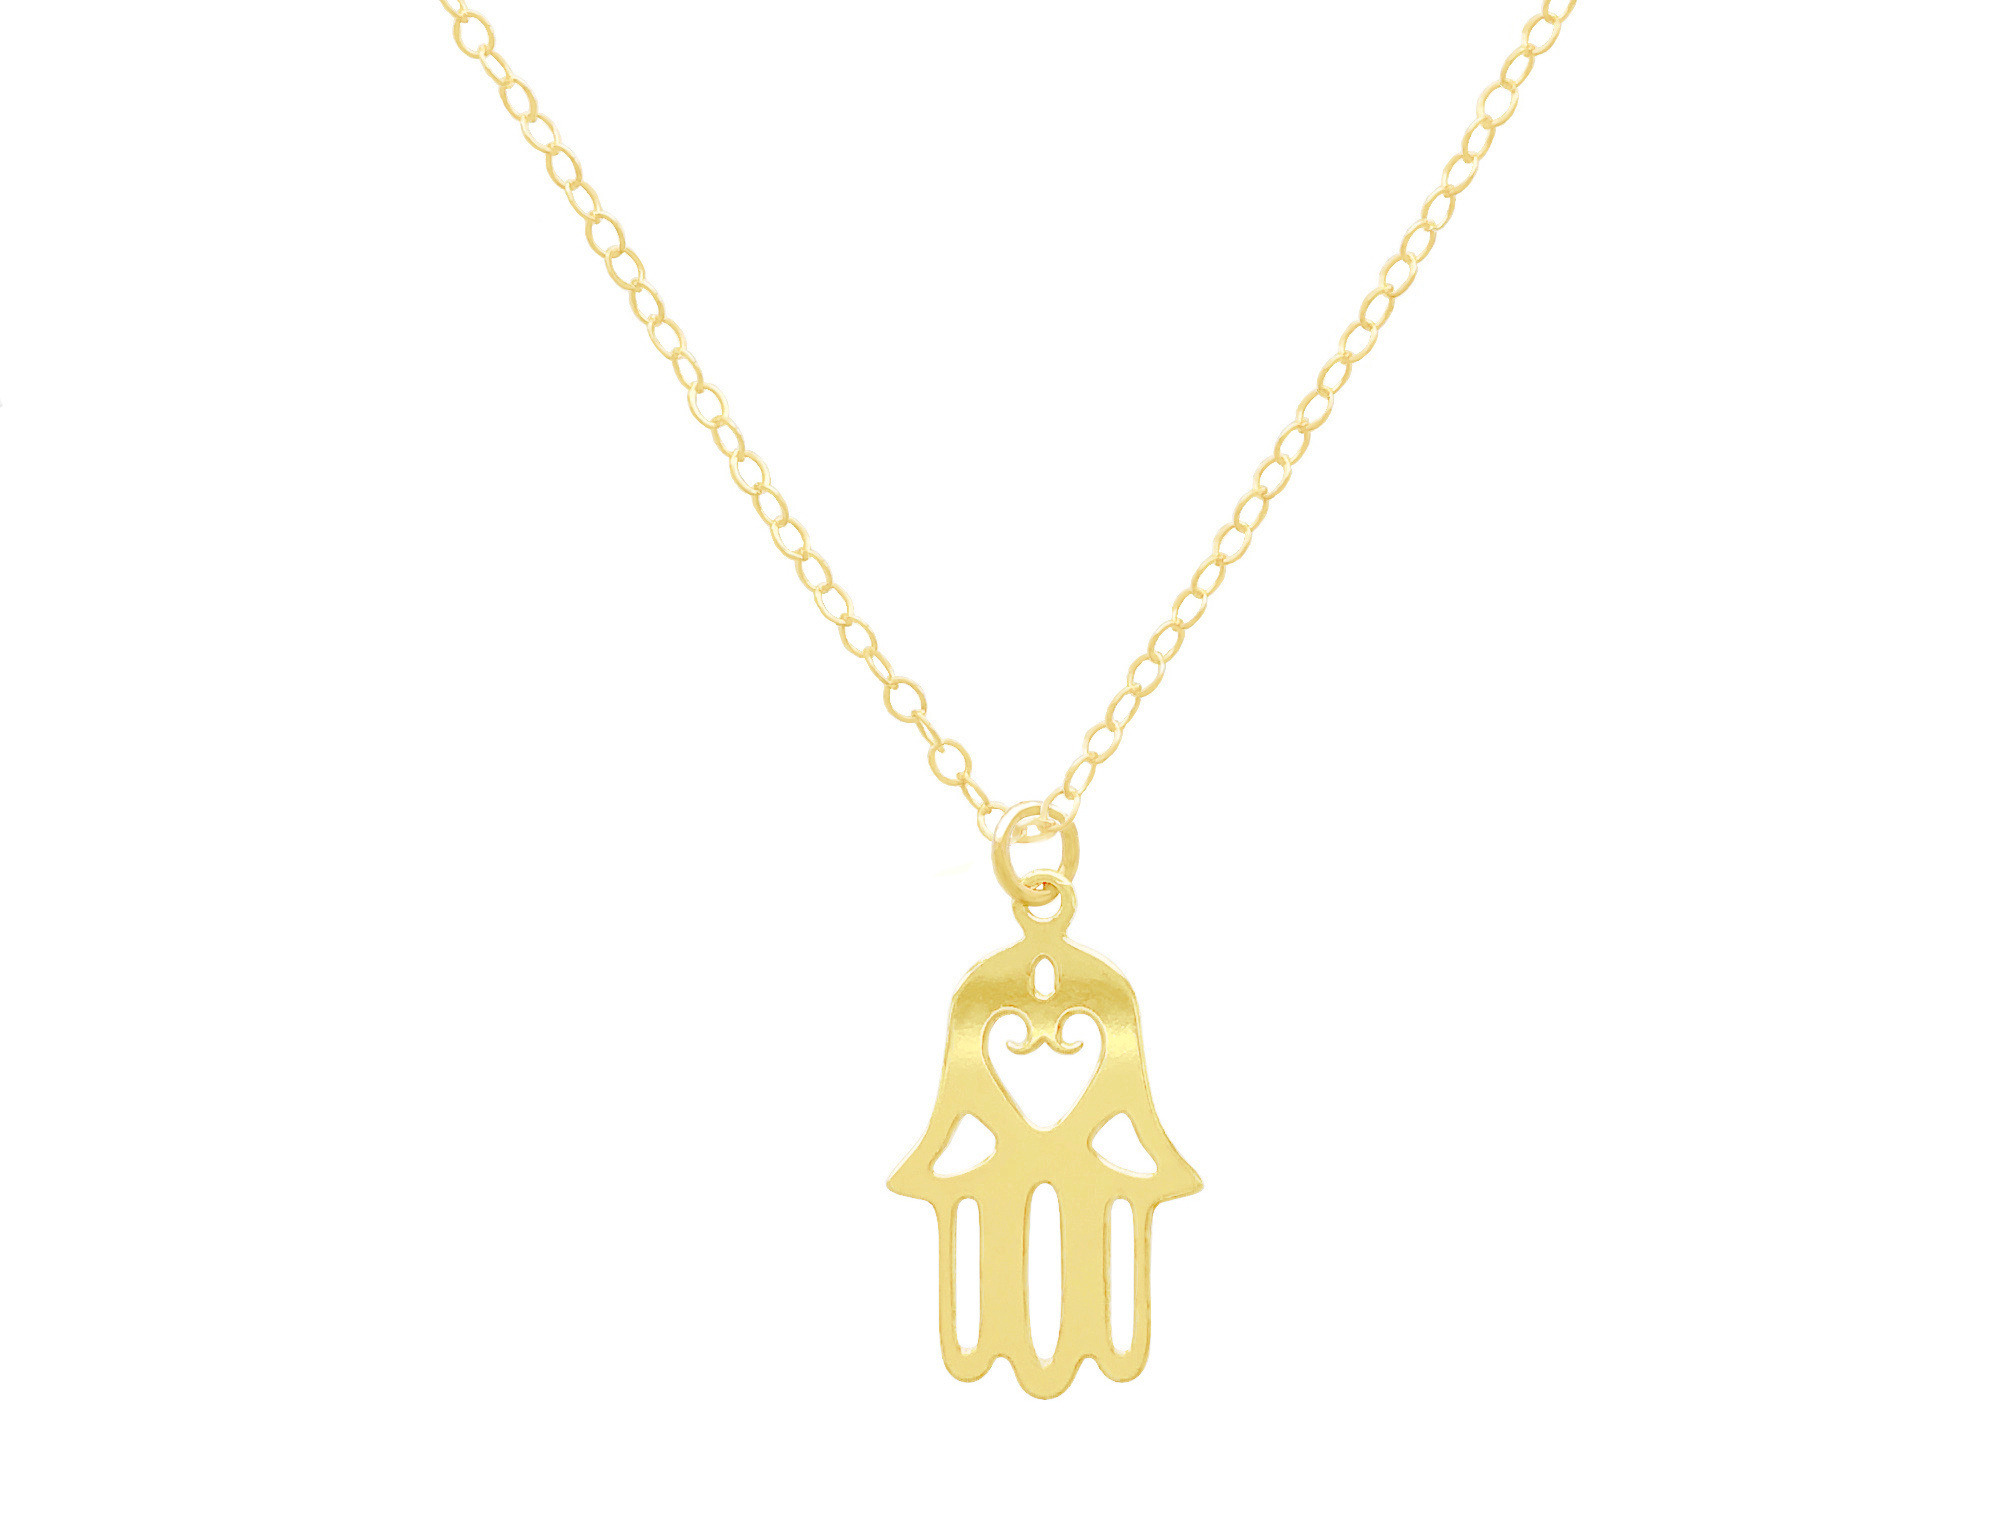 Collier KHOMSA or gold filled 14K pendentif Main de Fatma Khamsa Hamsa ethnique-minimaliste-bohème- MARJANE et Cie